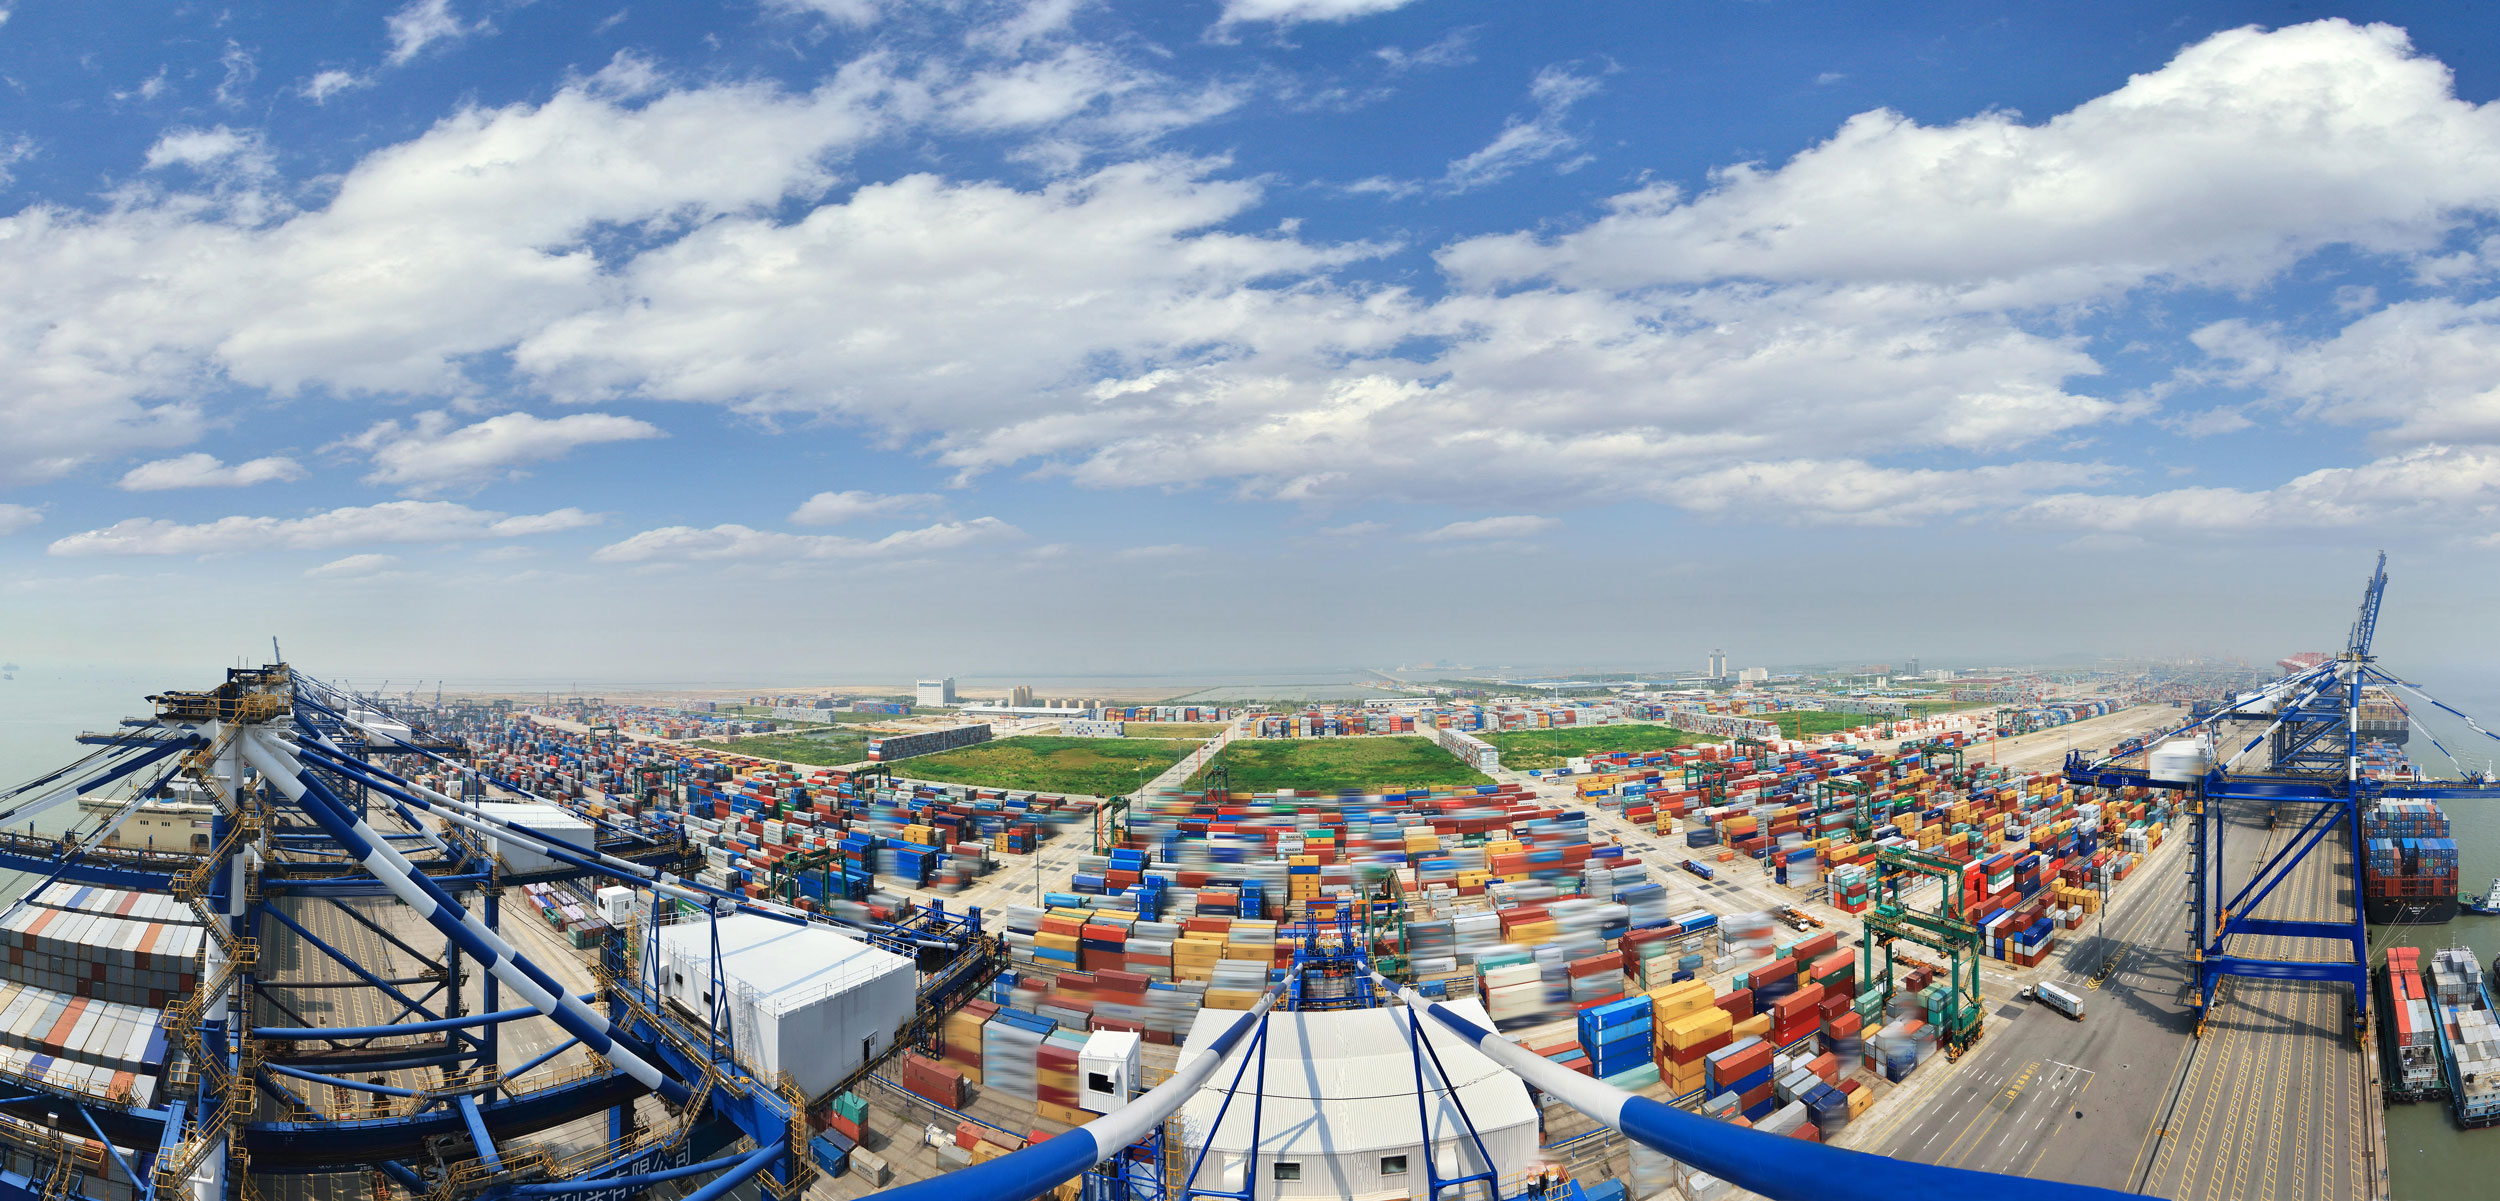 Nansha port of Guangzhou City, China